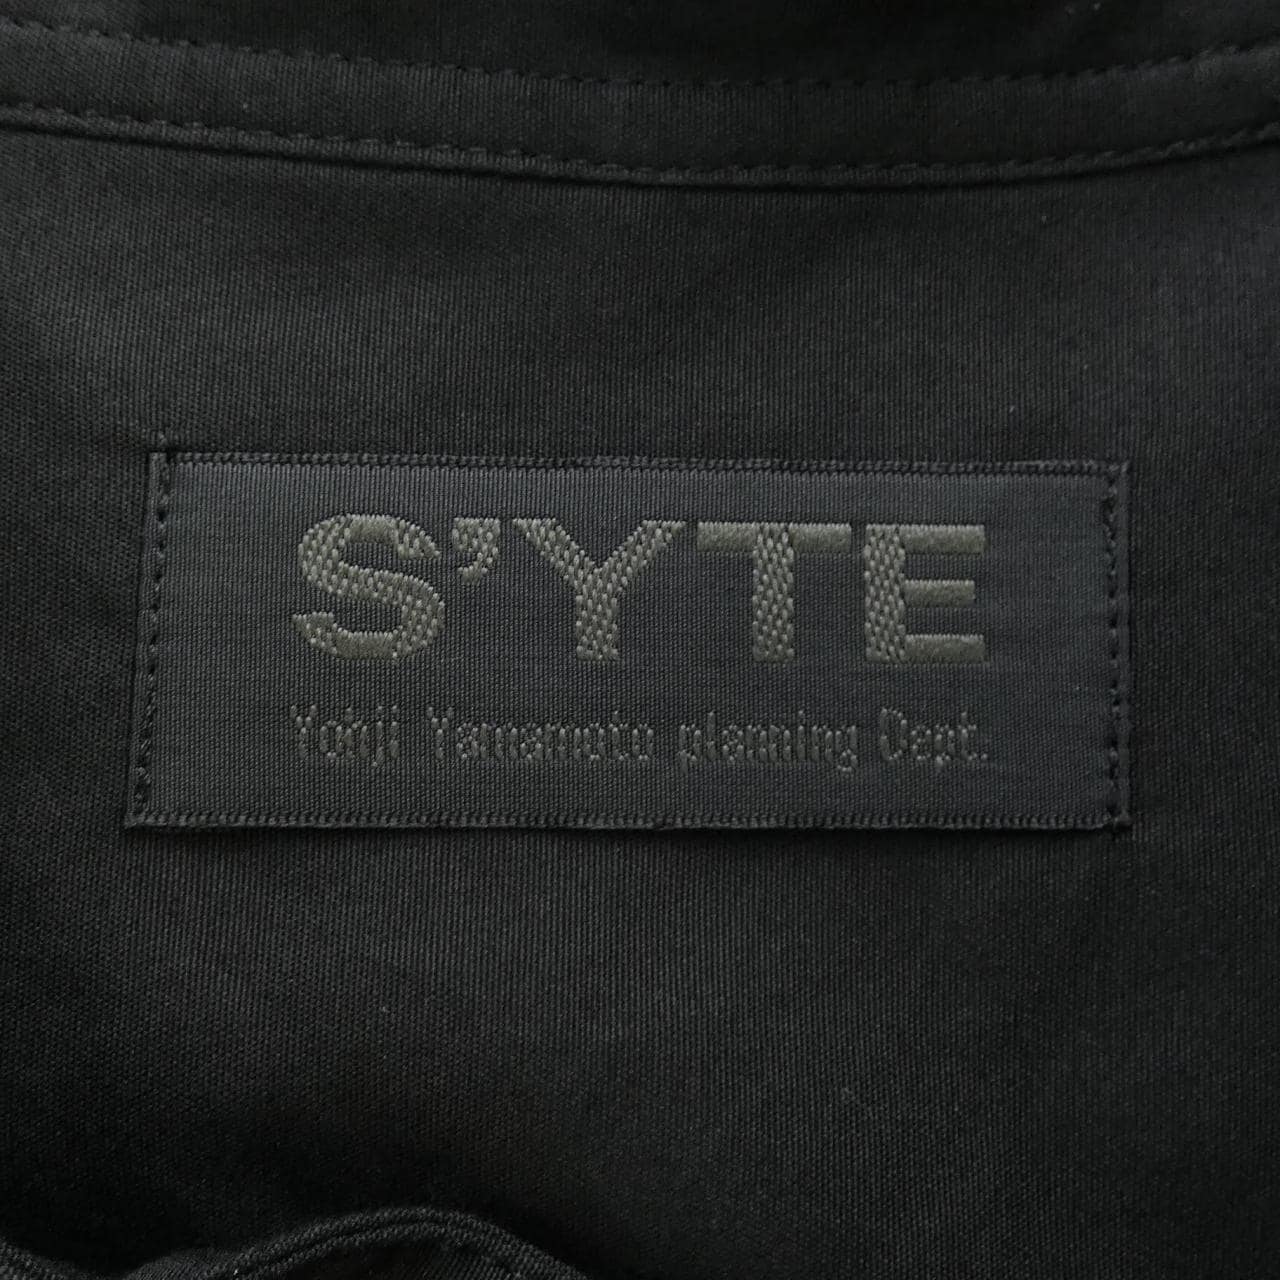 サイト S'YTE シャツ